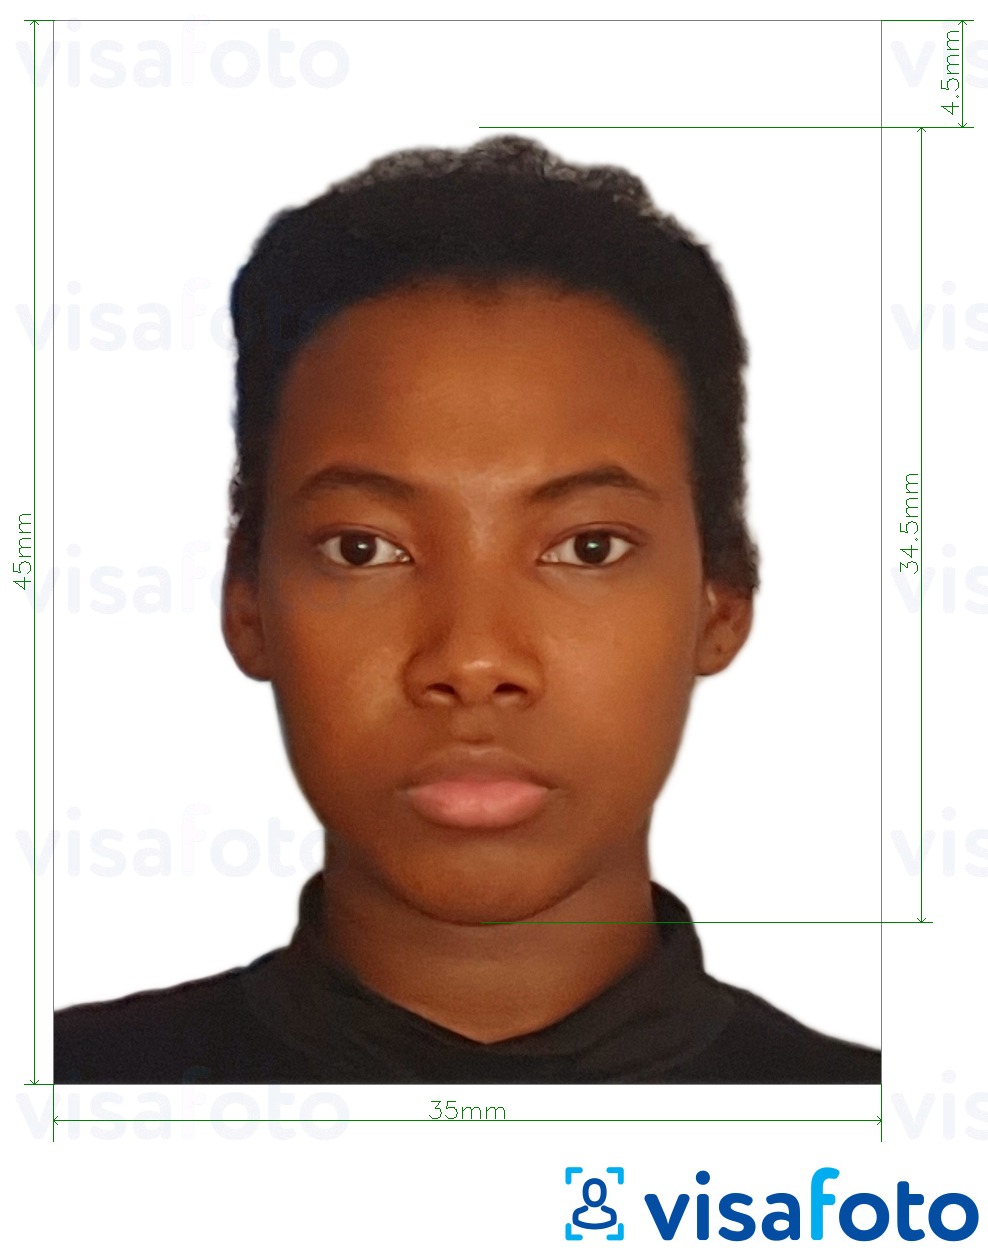 Voorbeeld van foto voor Nigeria paspoort 35x45 mm met exacte maatspecificatie